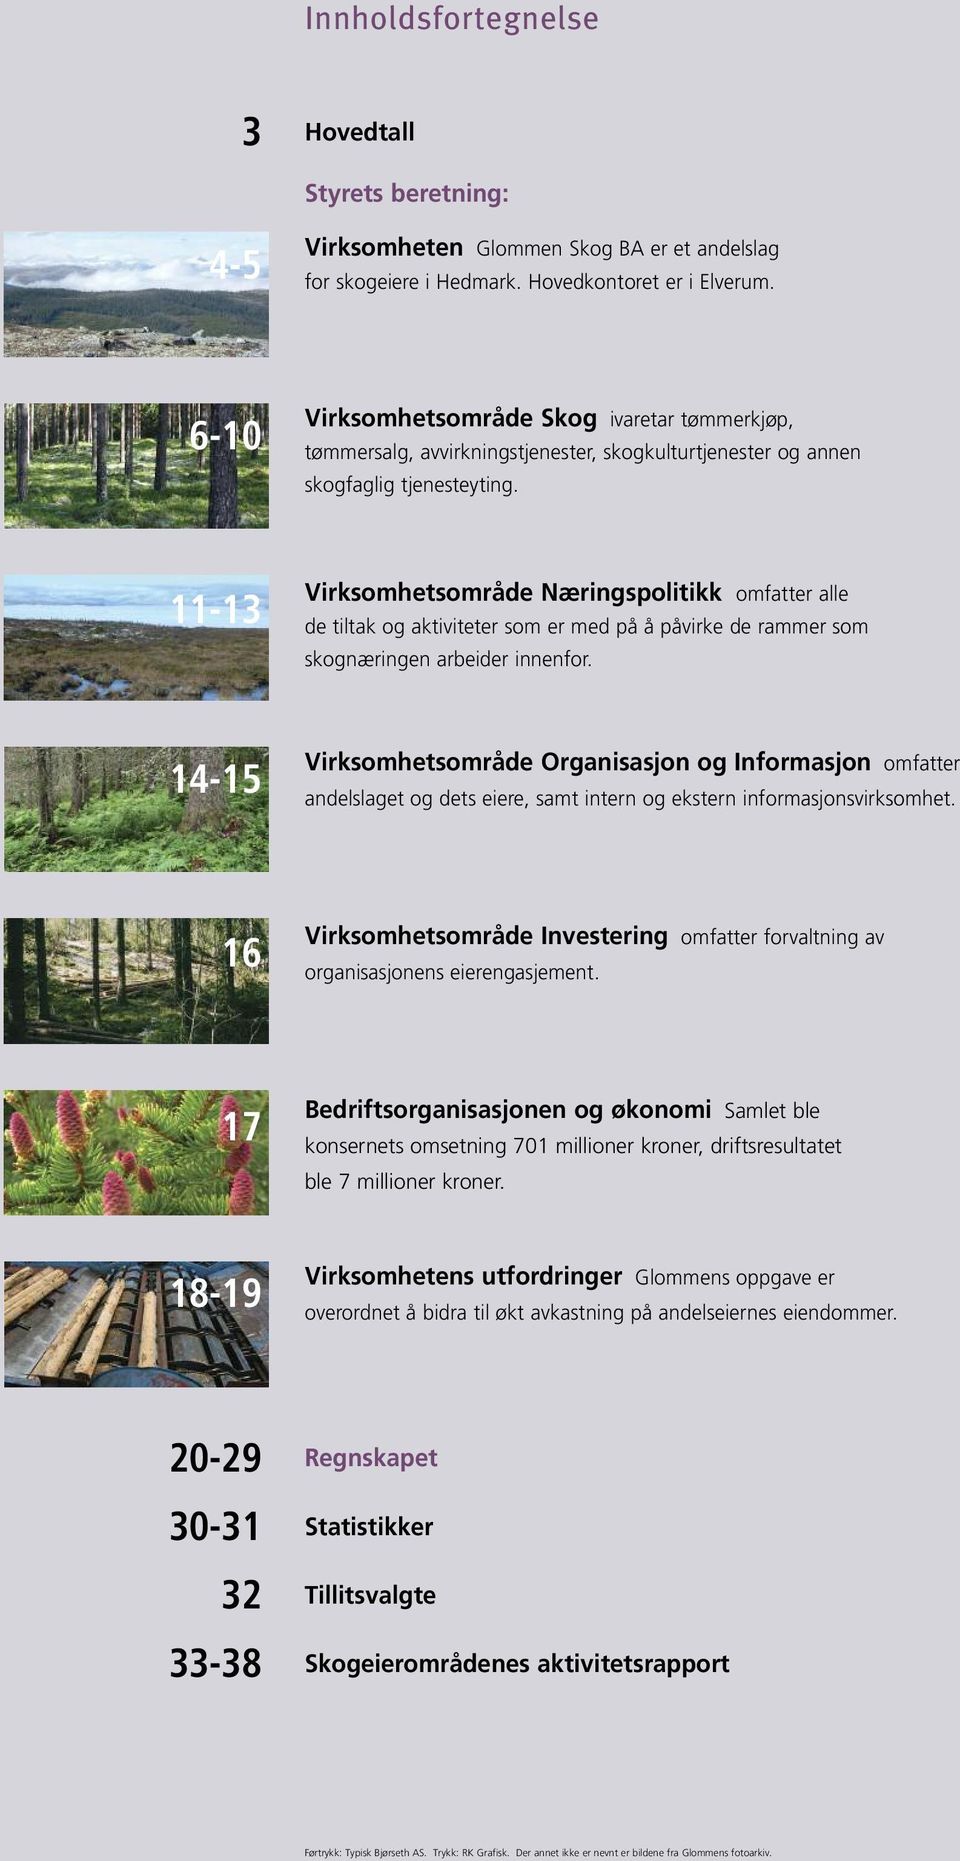 11-13 Virksomhetsområde Næringspolitikk omfatter alle de tiltak og aktiviteter som er med på å påvirke de rammer som skognæringen arbeider innenfor.